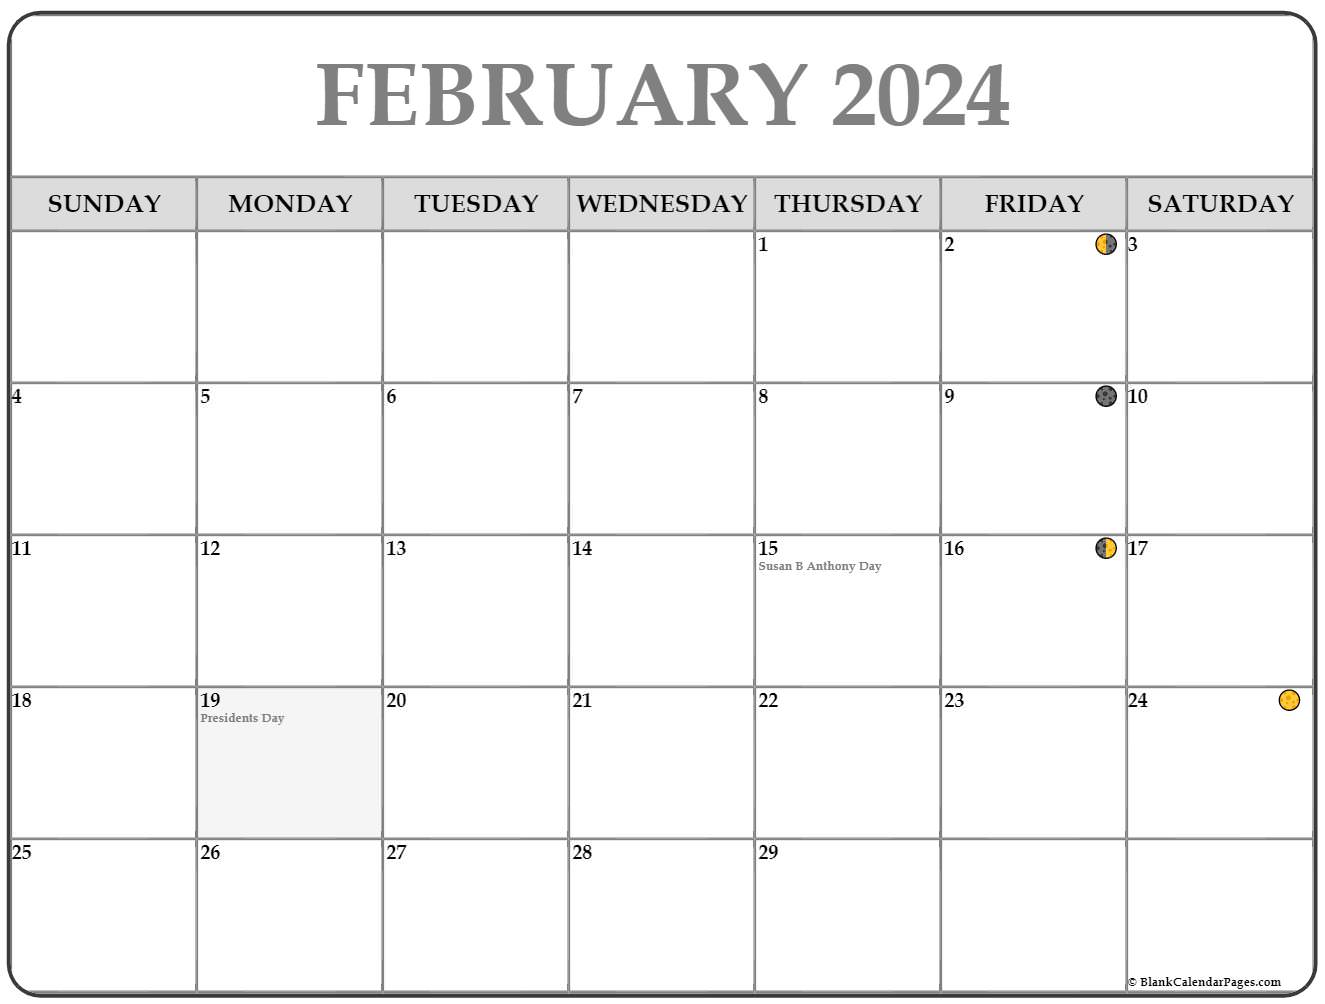 Moon Phase Calendar January 2022 February 2022 Lunar Calendar | Moon Phase Calendar